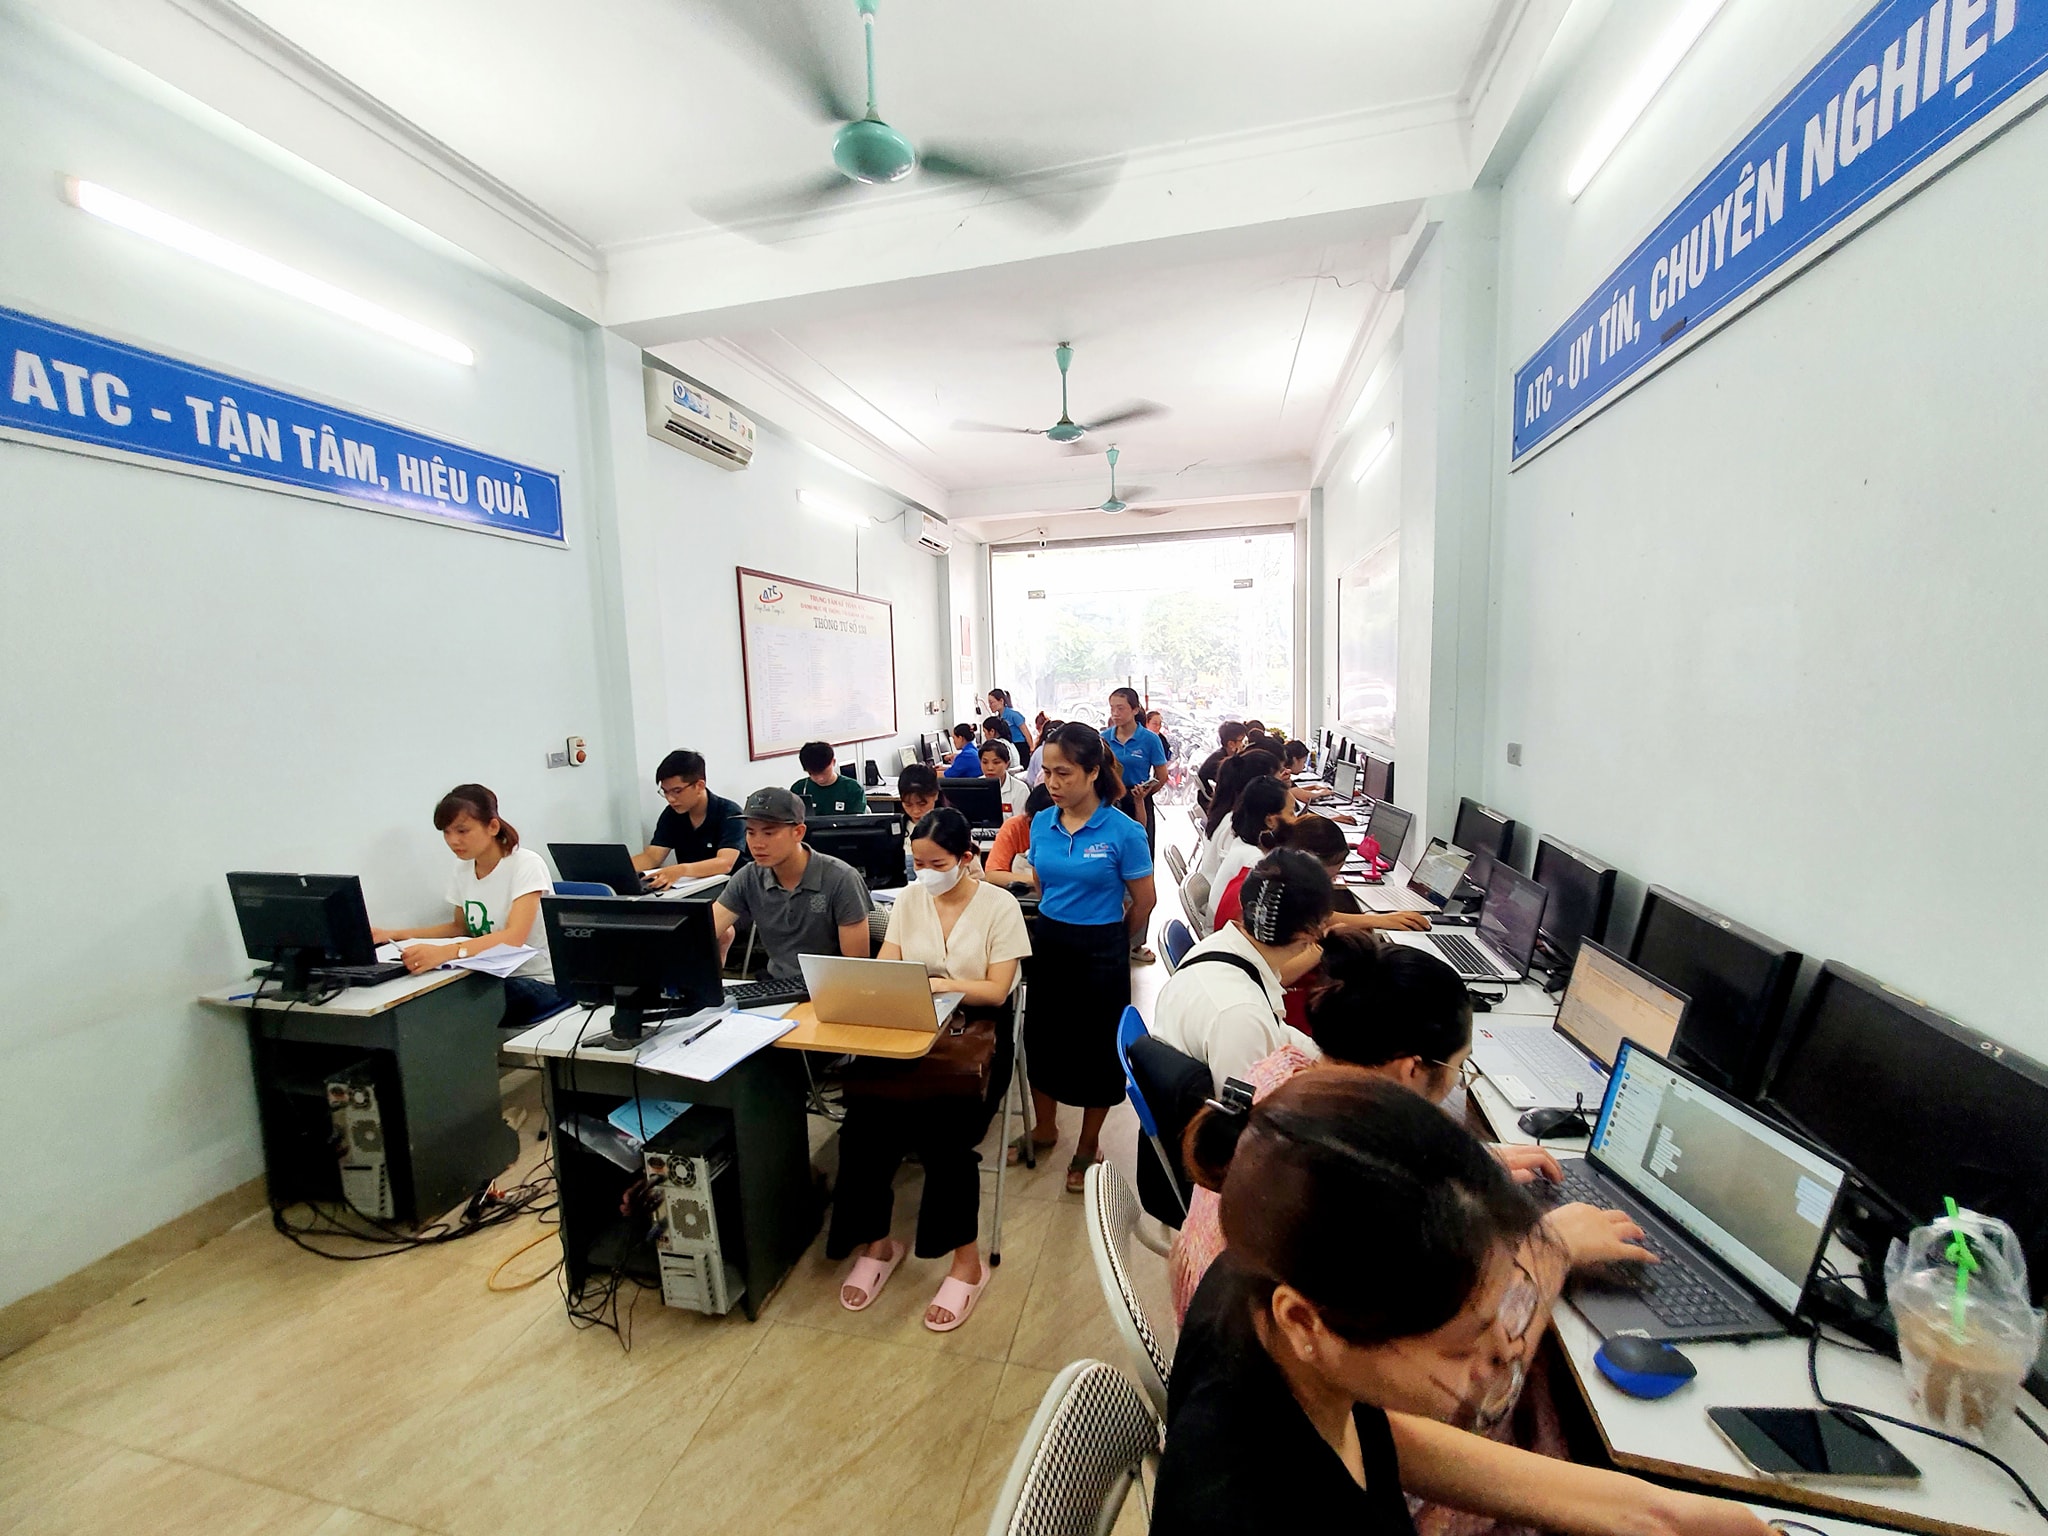 Học kế toán tổng hợp tại Thanh Hóa Trong quá trình hoạt động kinh doanh, có những trường hợp phát sinh ngược làm giảm trừ doanh thu, chi phí, thuế các loại…